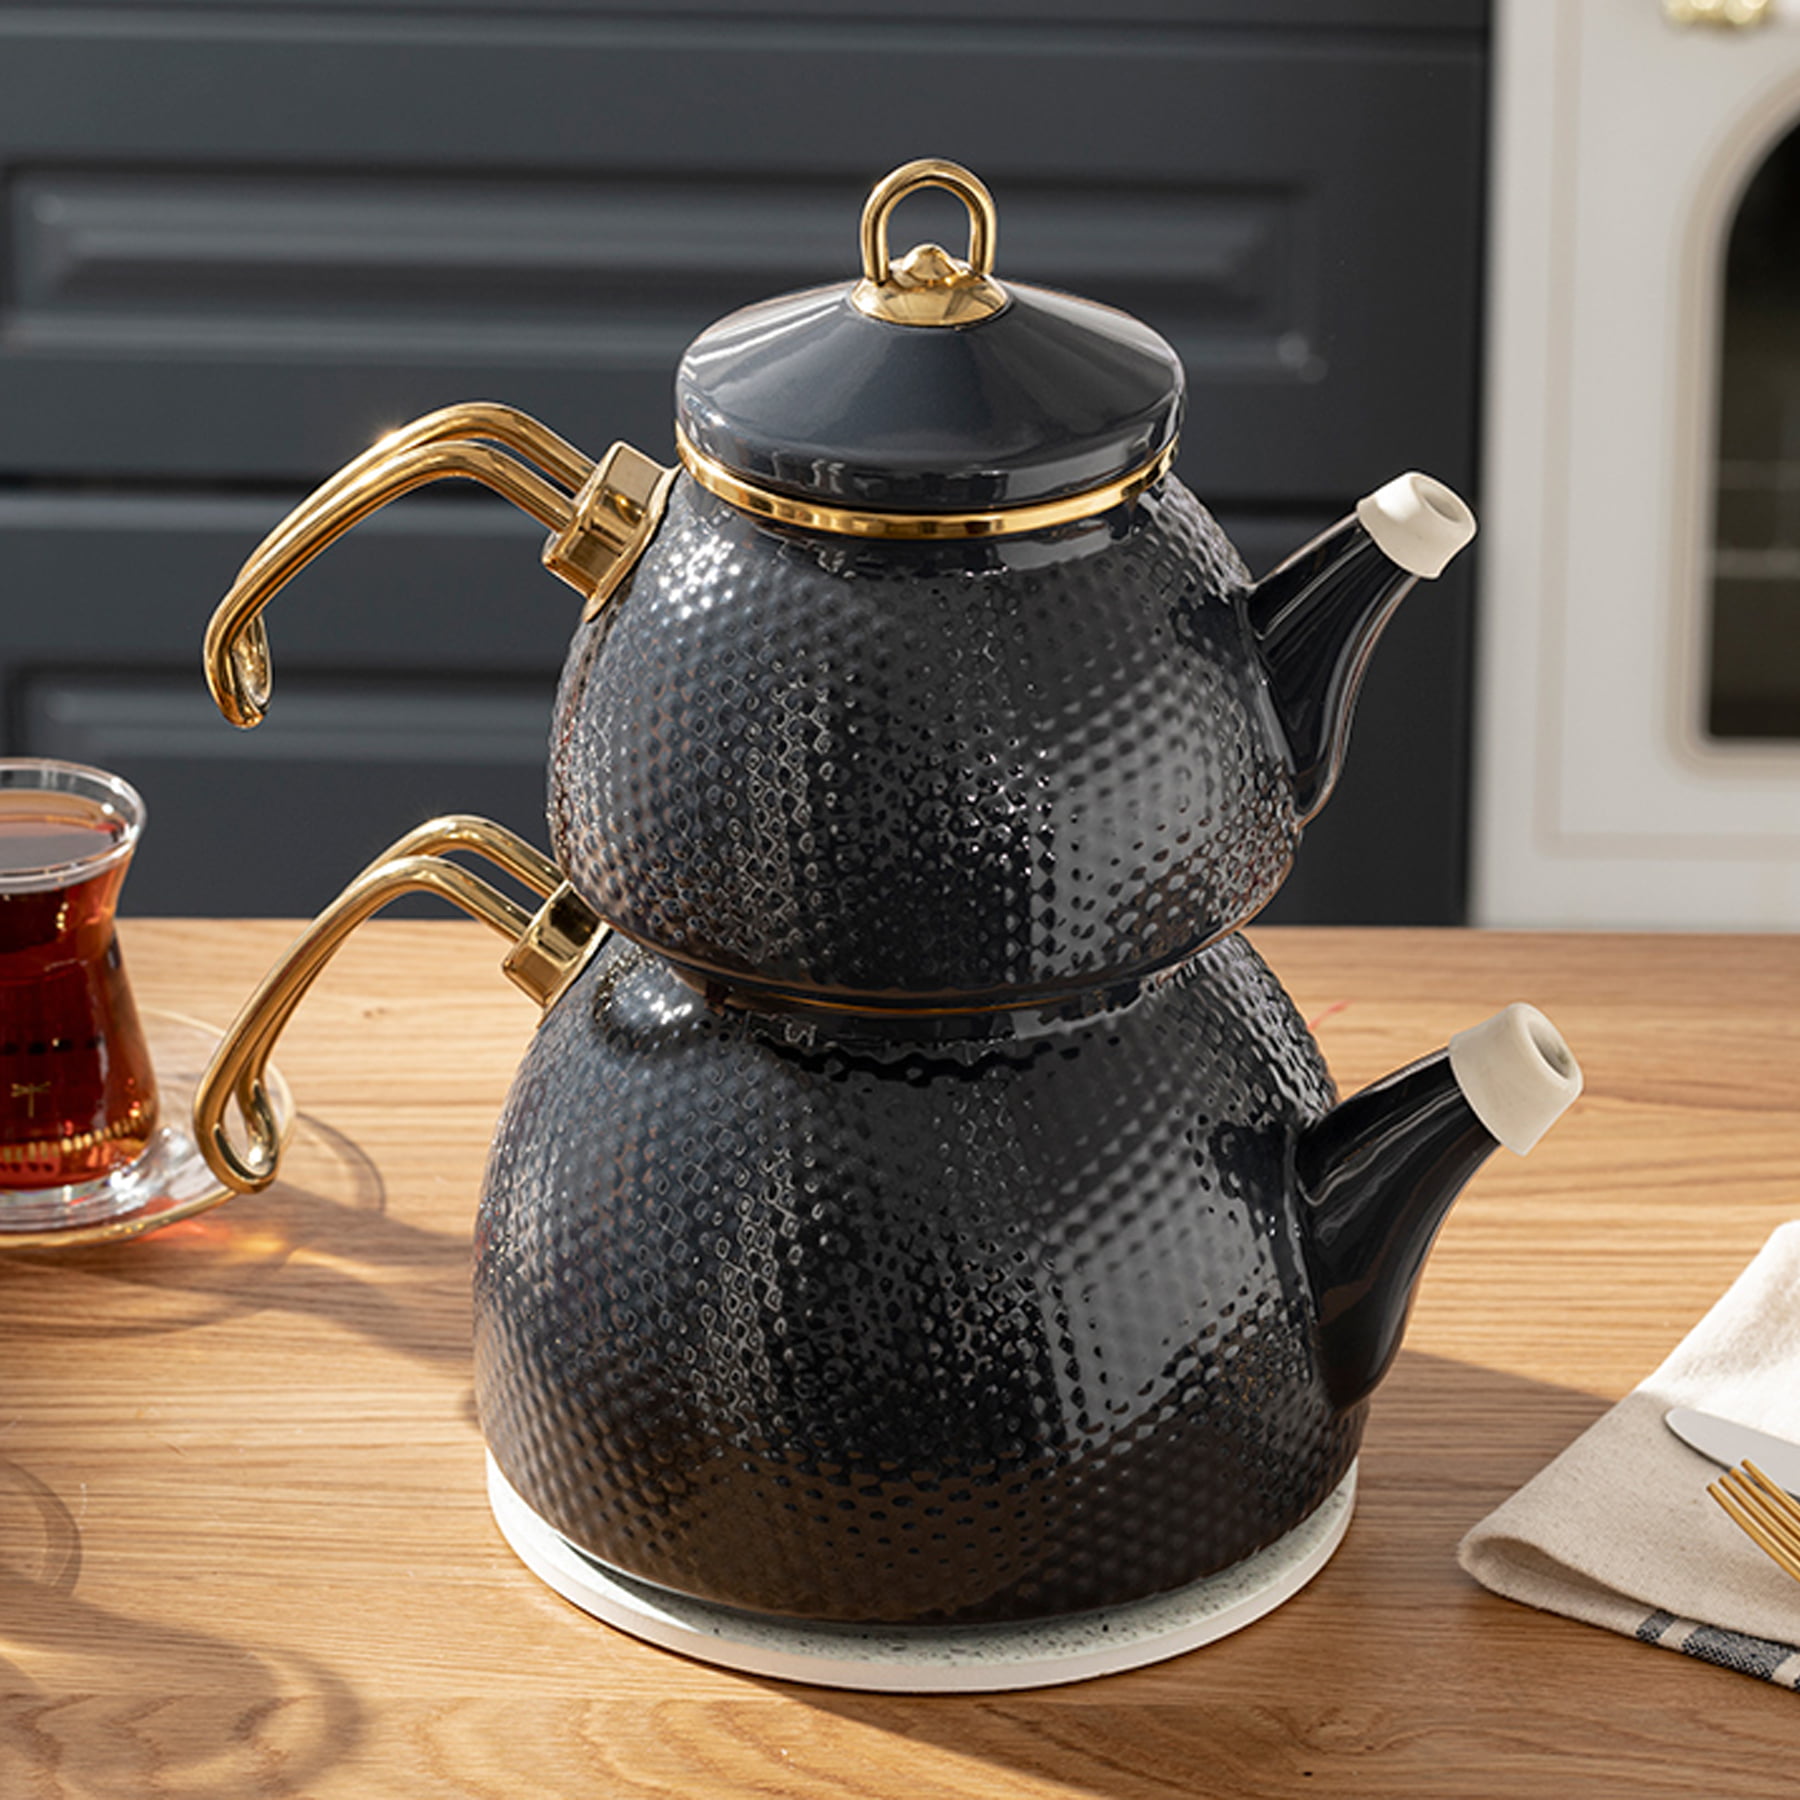 https://traditionalturk.com/wp-content/uploads/2021/12/anthracite-color-ceremony-enamel-turkish-tea-pot-kettle-1.jpg